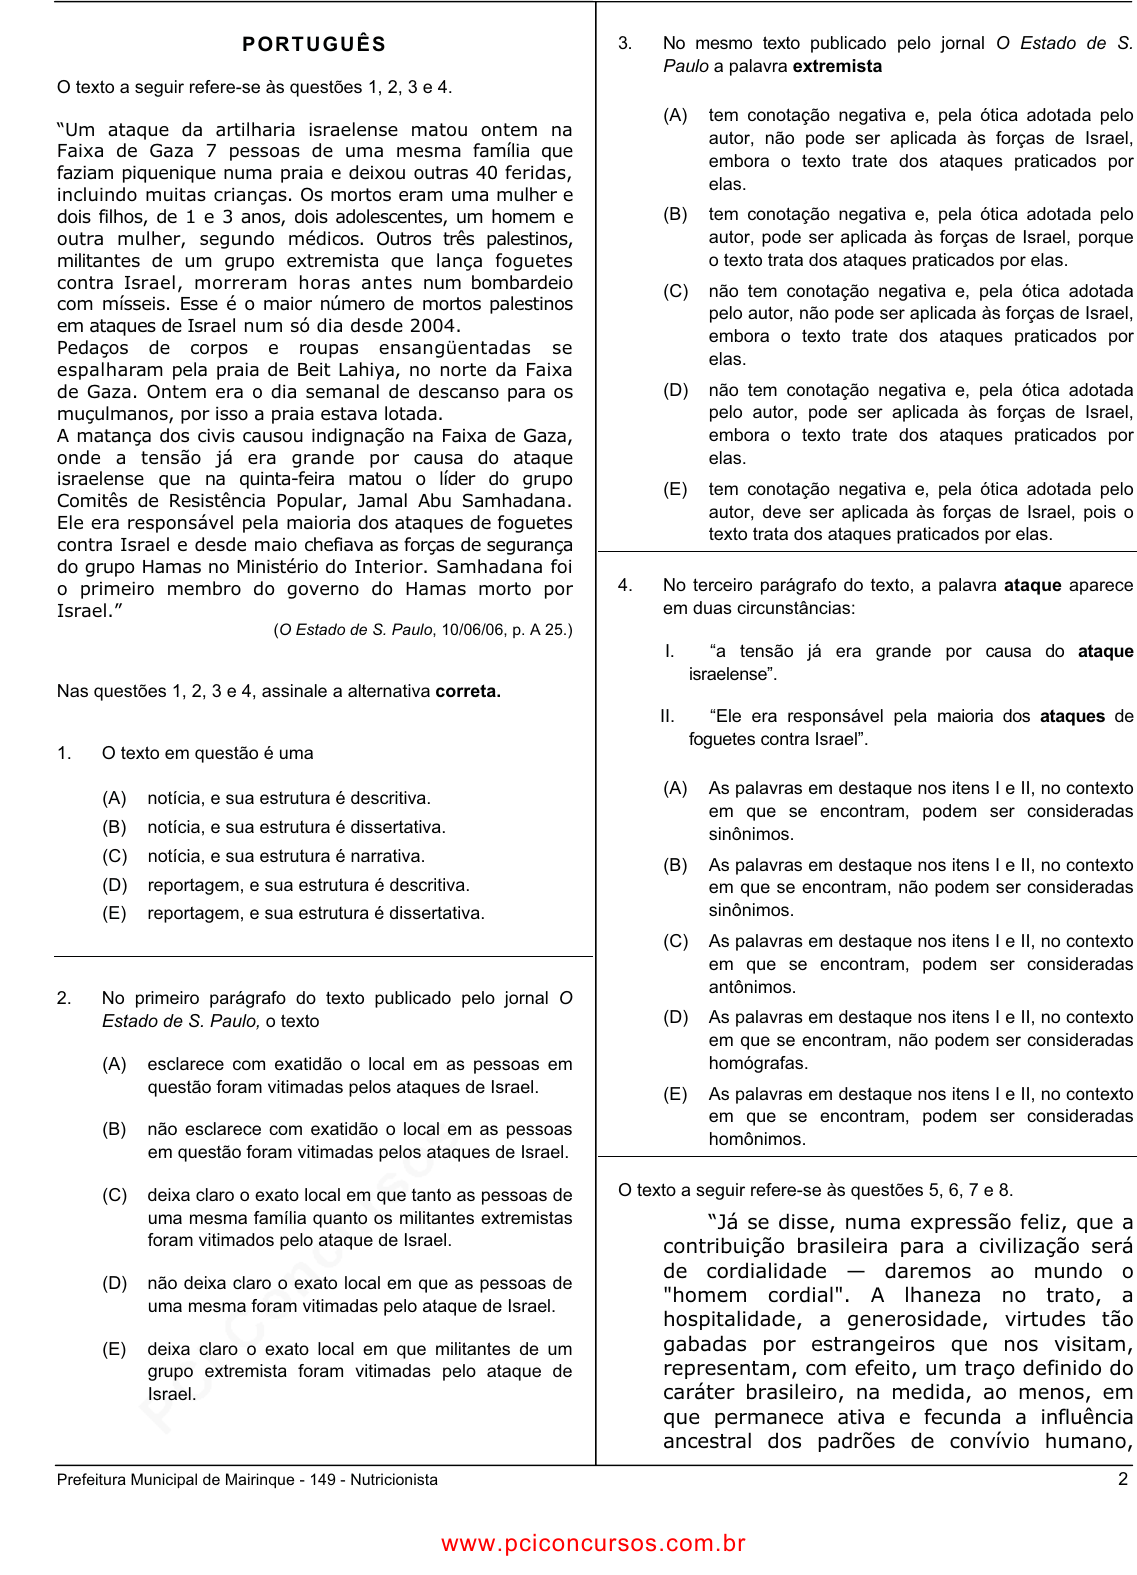 Prova Pref. MairinqueSP - CETRO - 2006 - para Nutricionista.pdf - Provas de  Concursos Públicos